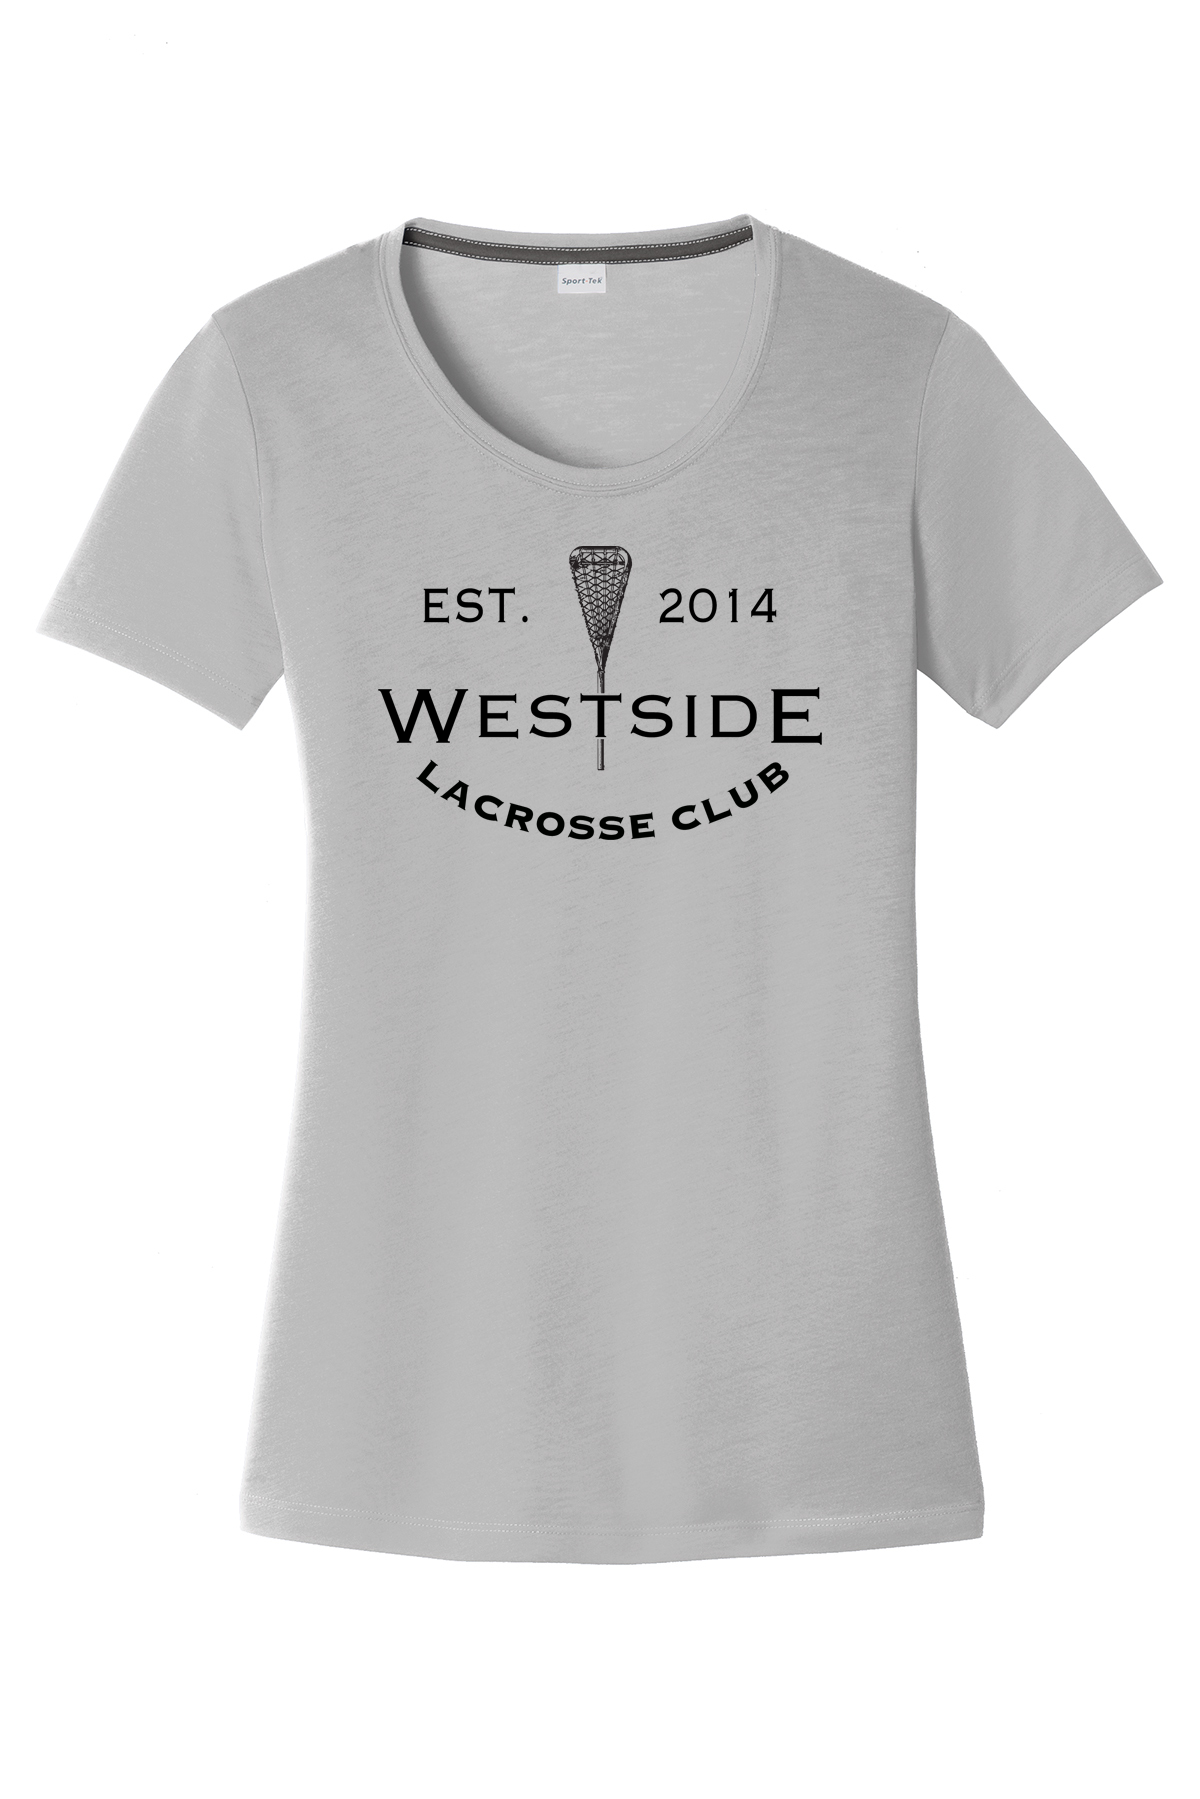 Westside Altitude Lacrosse Women's CottonTouch Performance T-Shirt